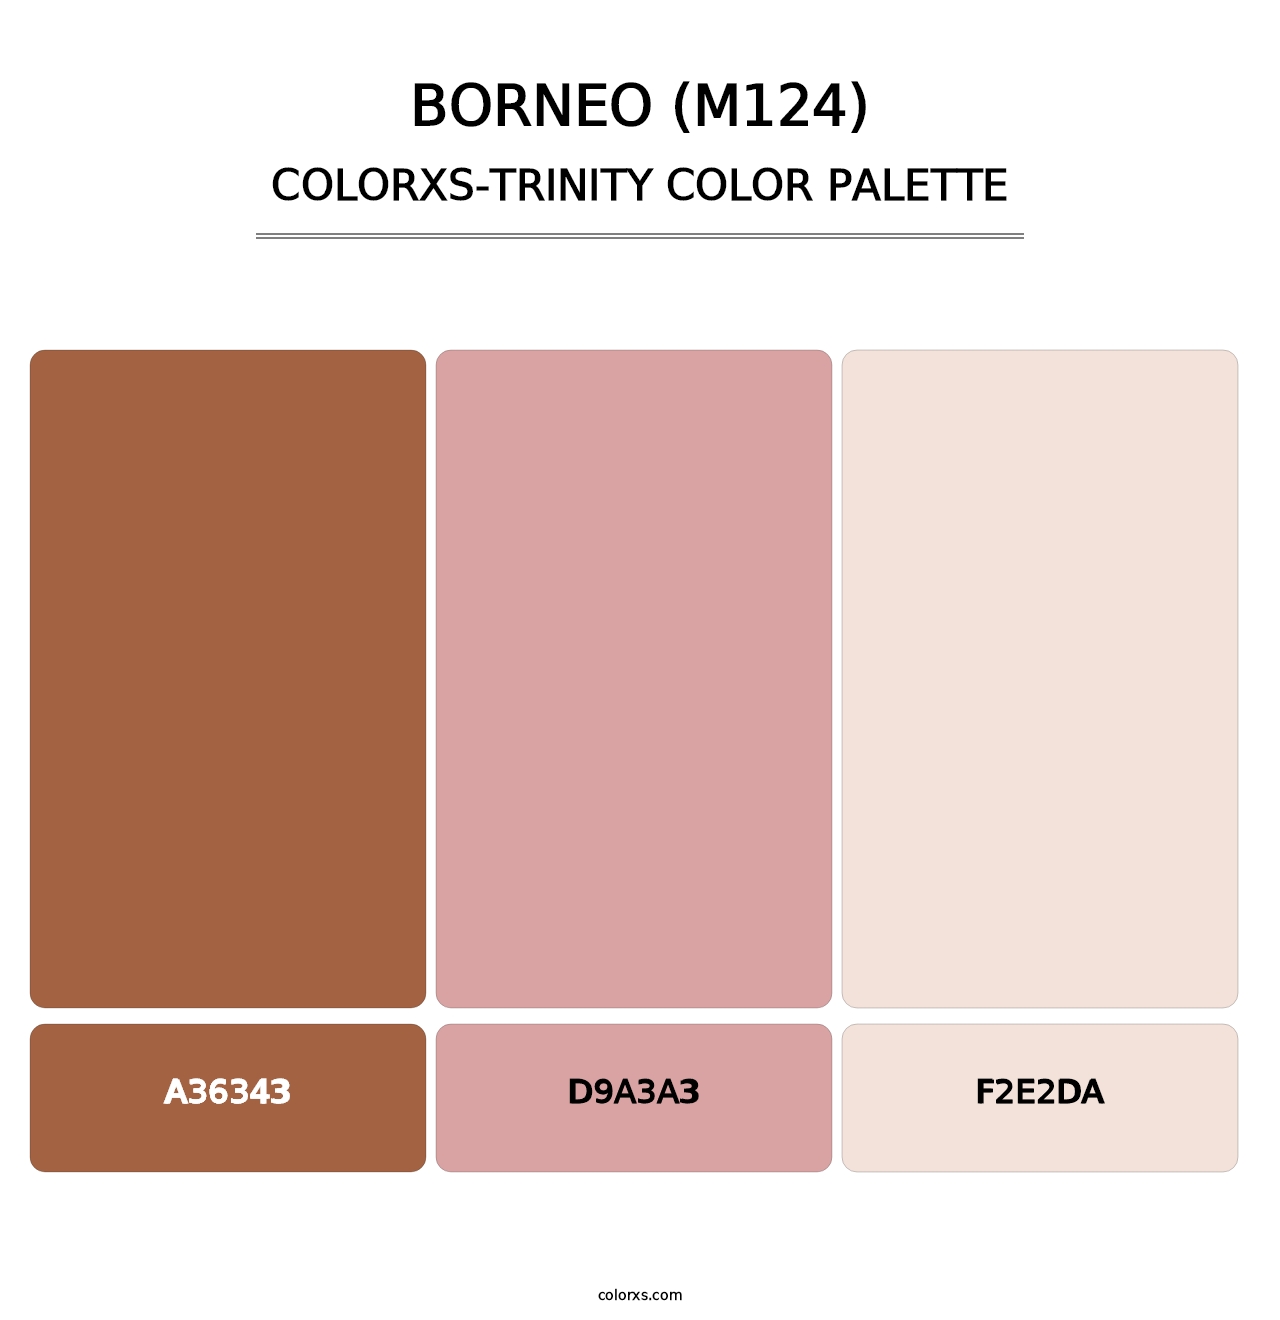 Borneo (M124) - Colorxs Trinity Palette